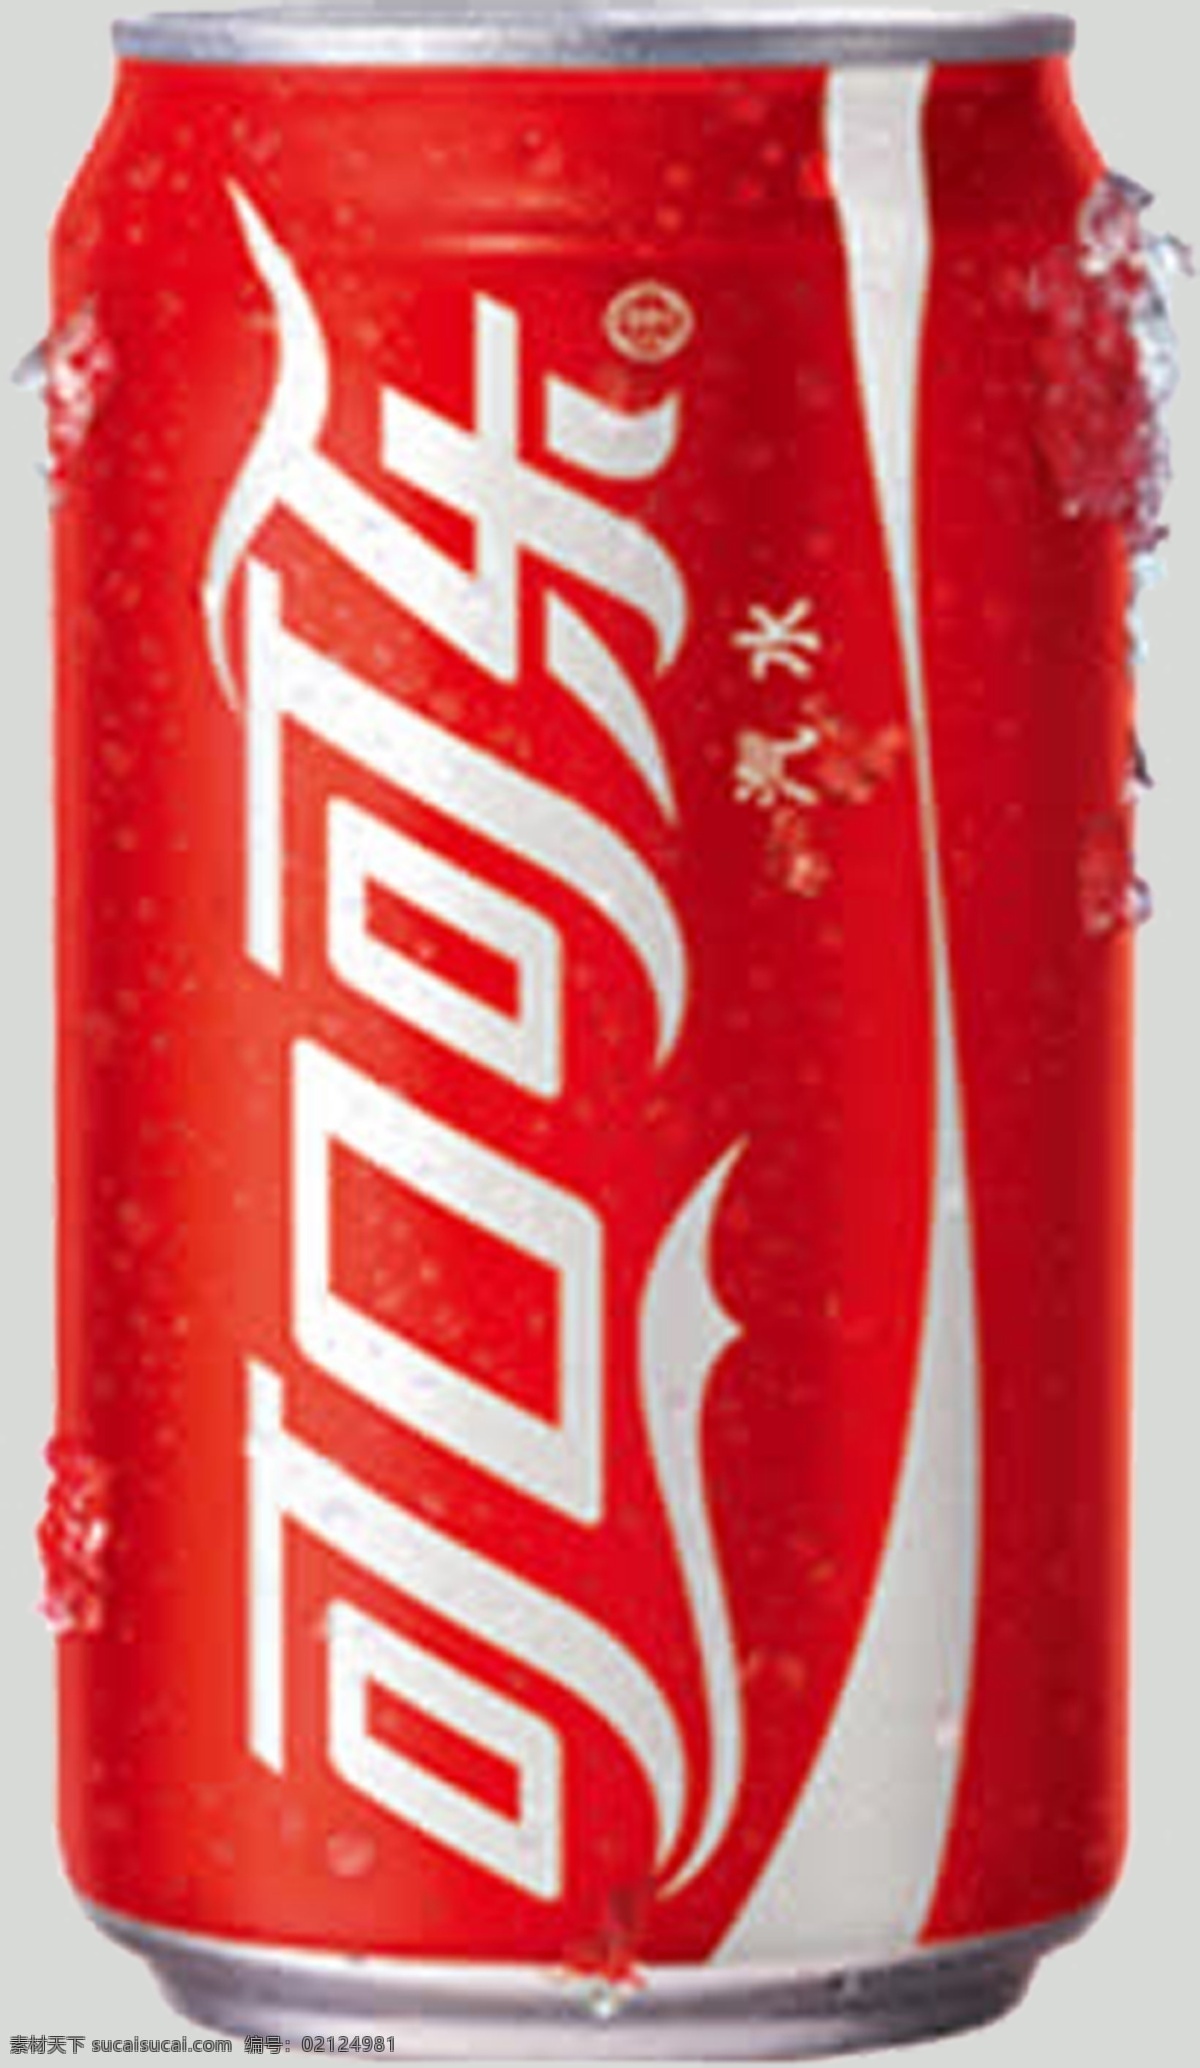 可口可乐免扣 可口可乐素材 易拉罐可乐 可乐素材 可乐免扣 免扣可乐 平面设计 生活百科 餐饮美食